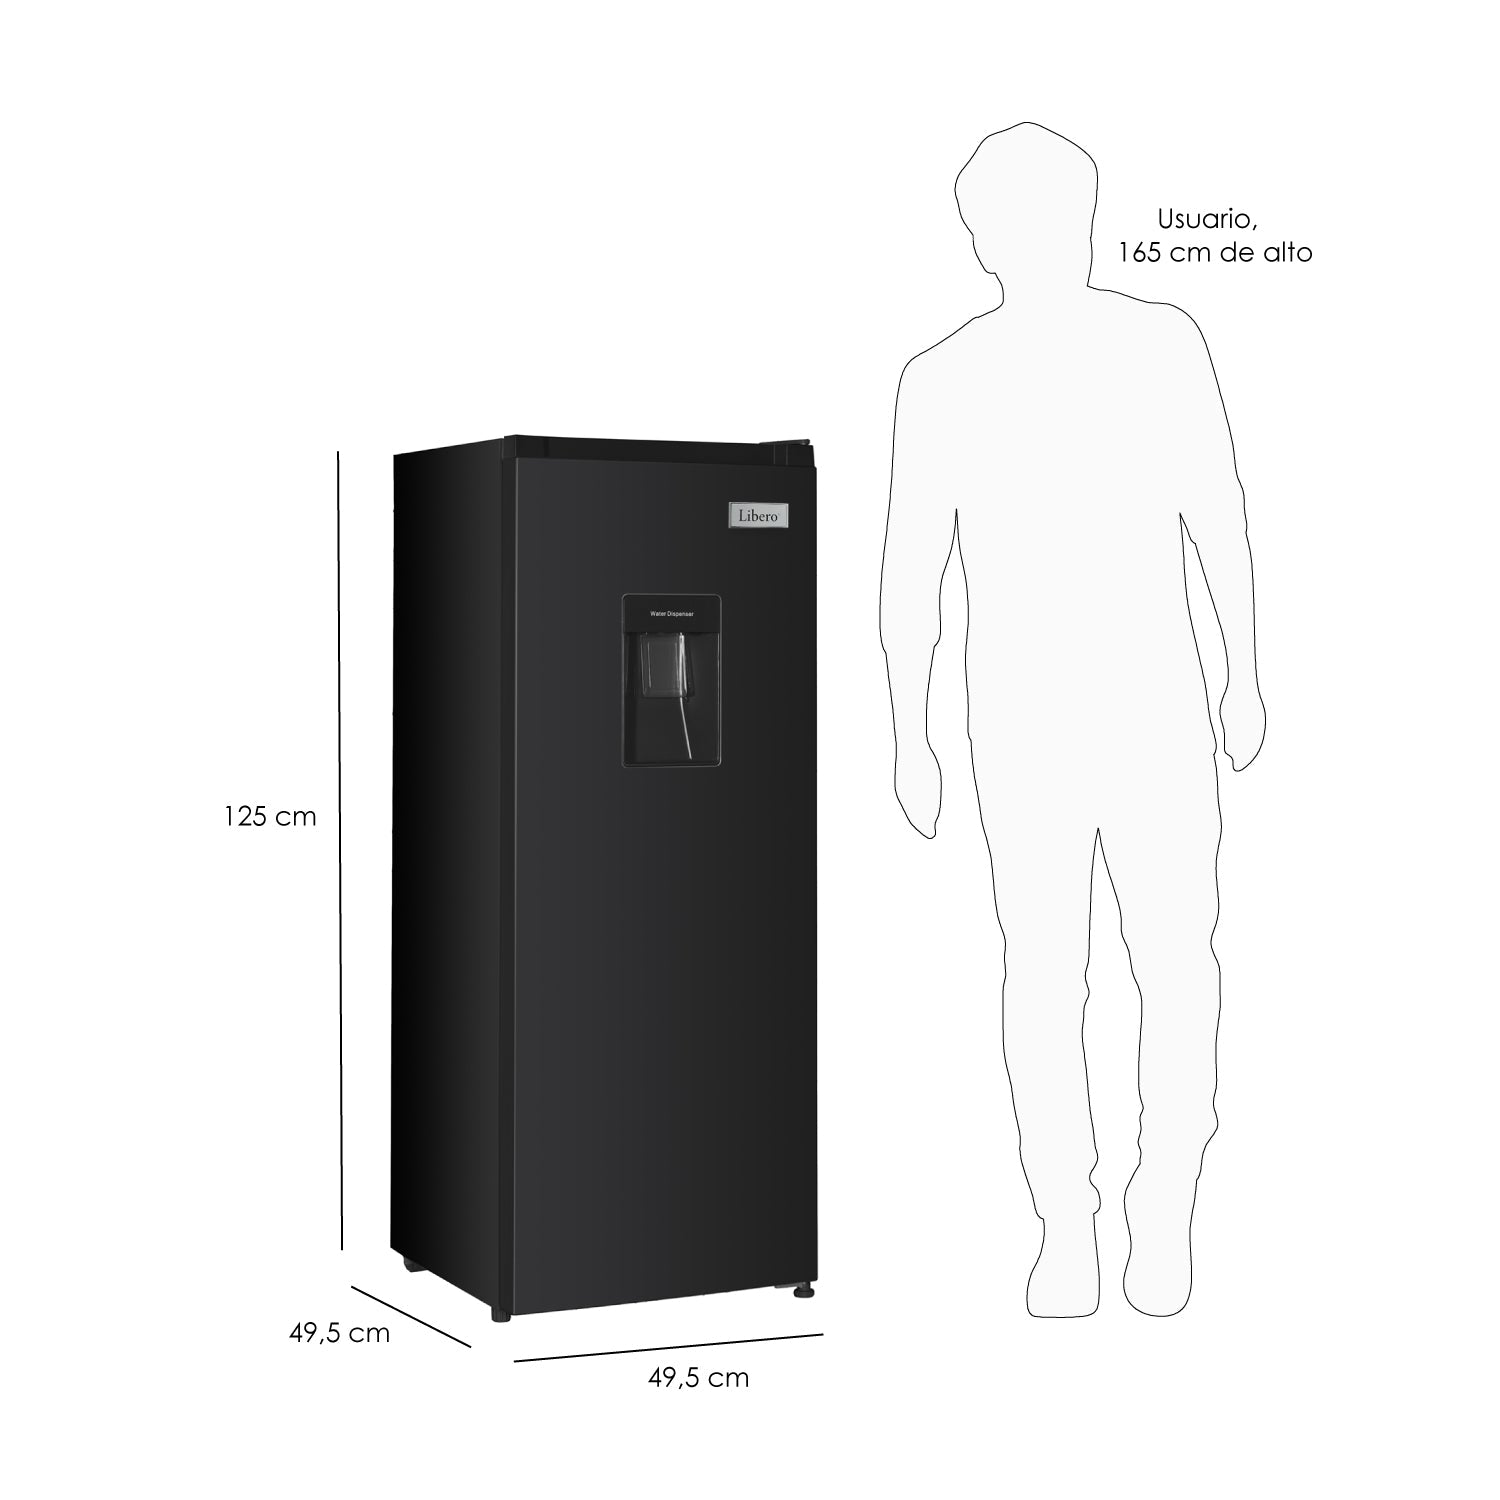 Refrigerador Monopuerta Frio Directo Lrm-178dfnw 167 Lts5#Negro